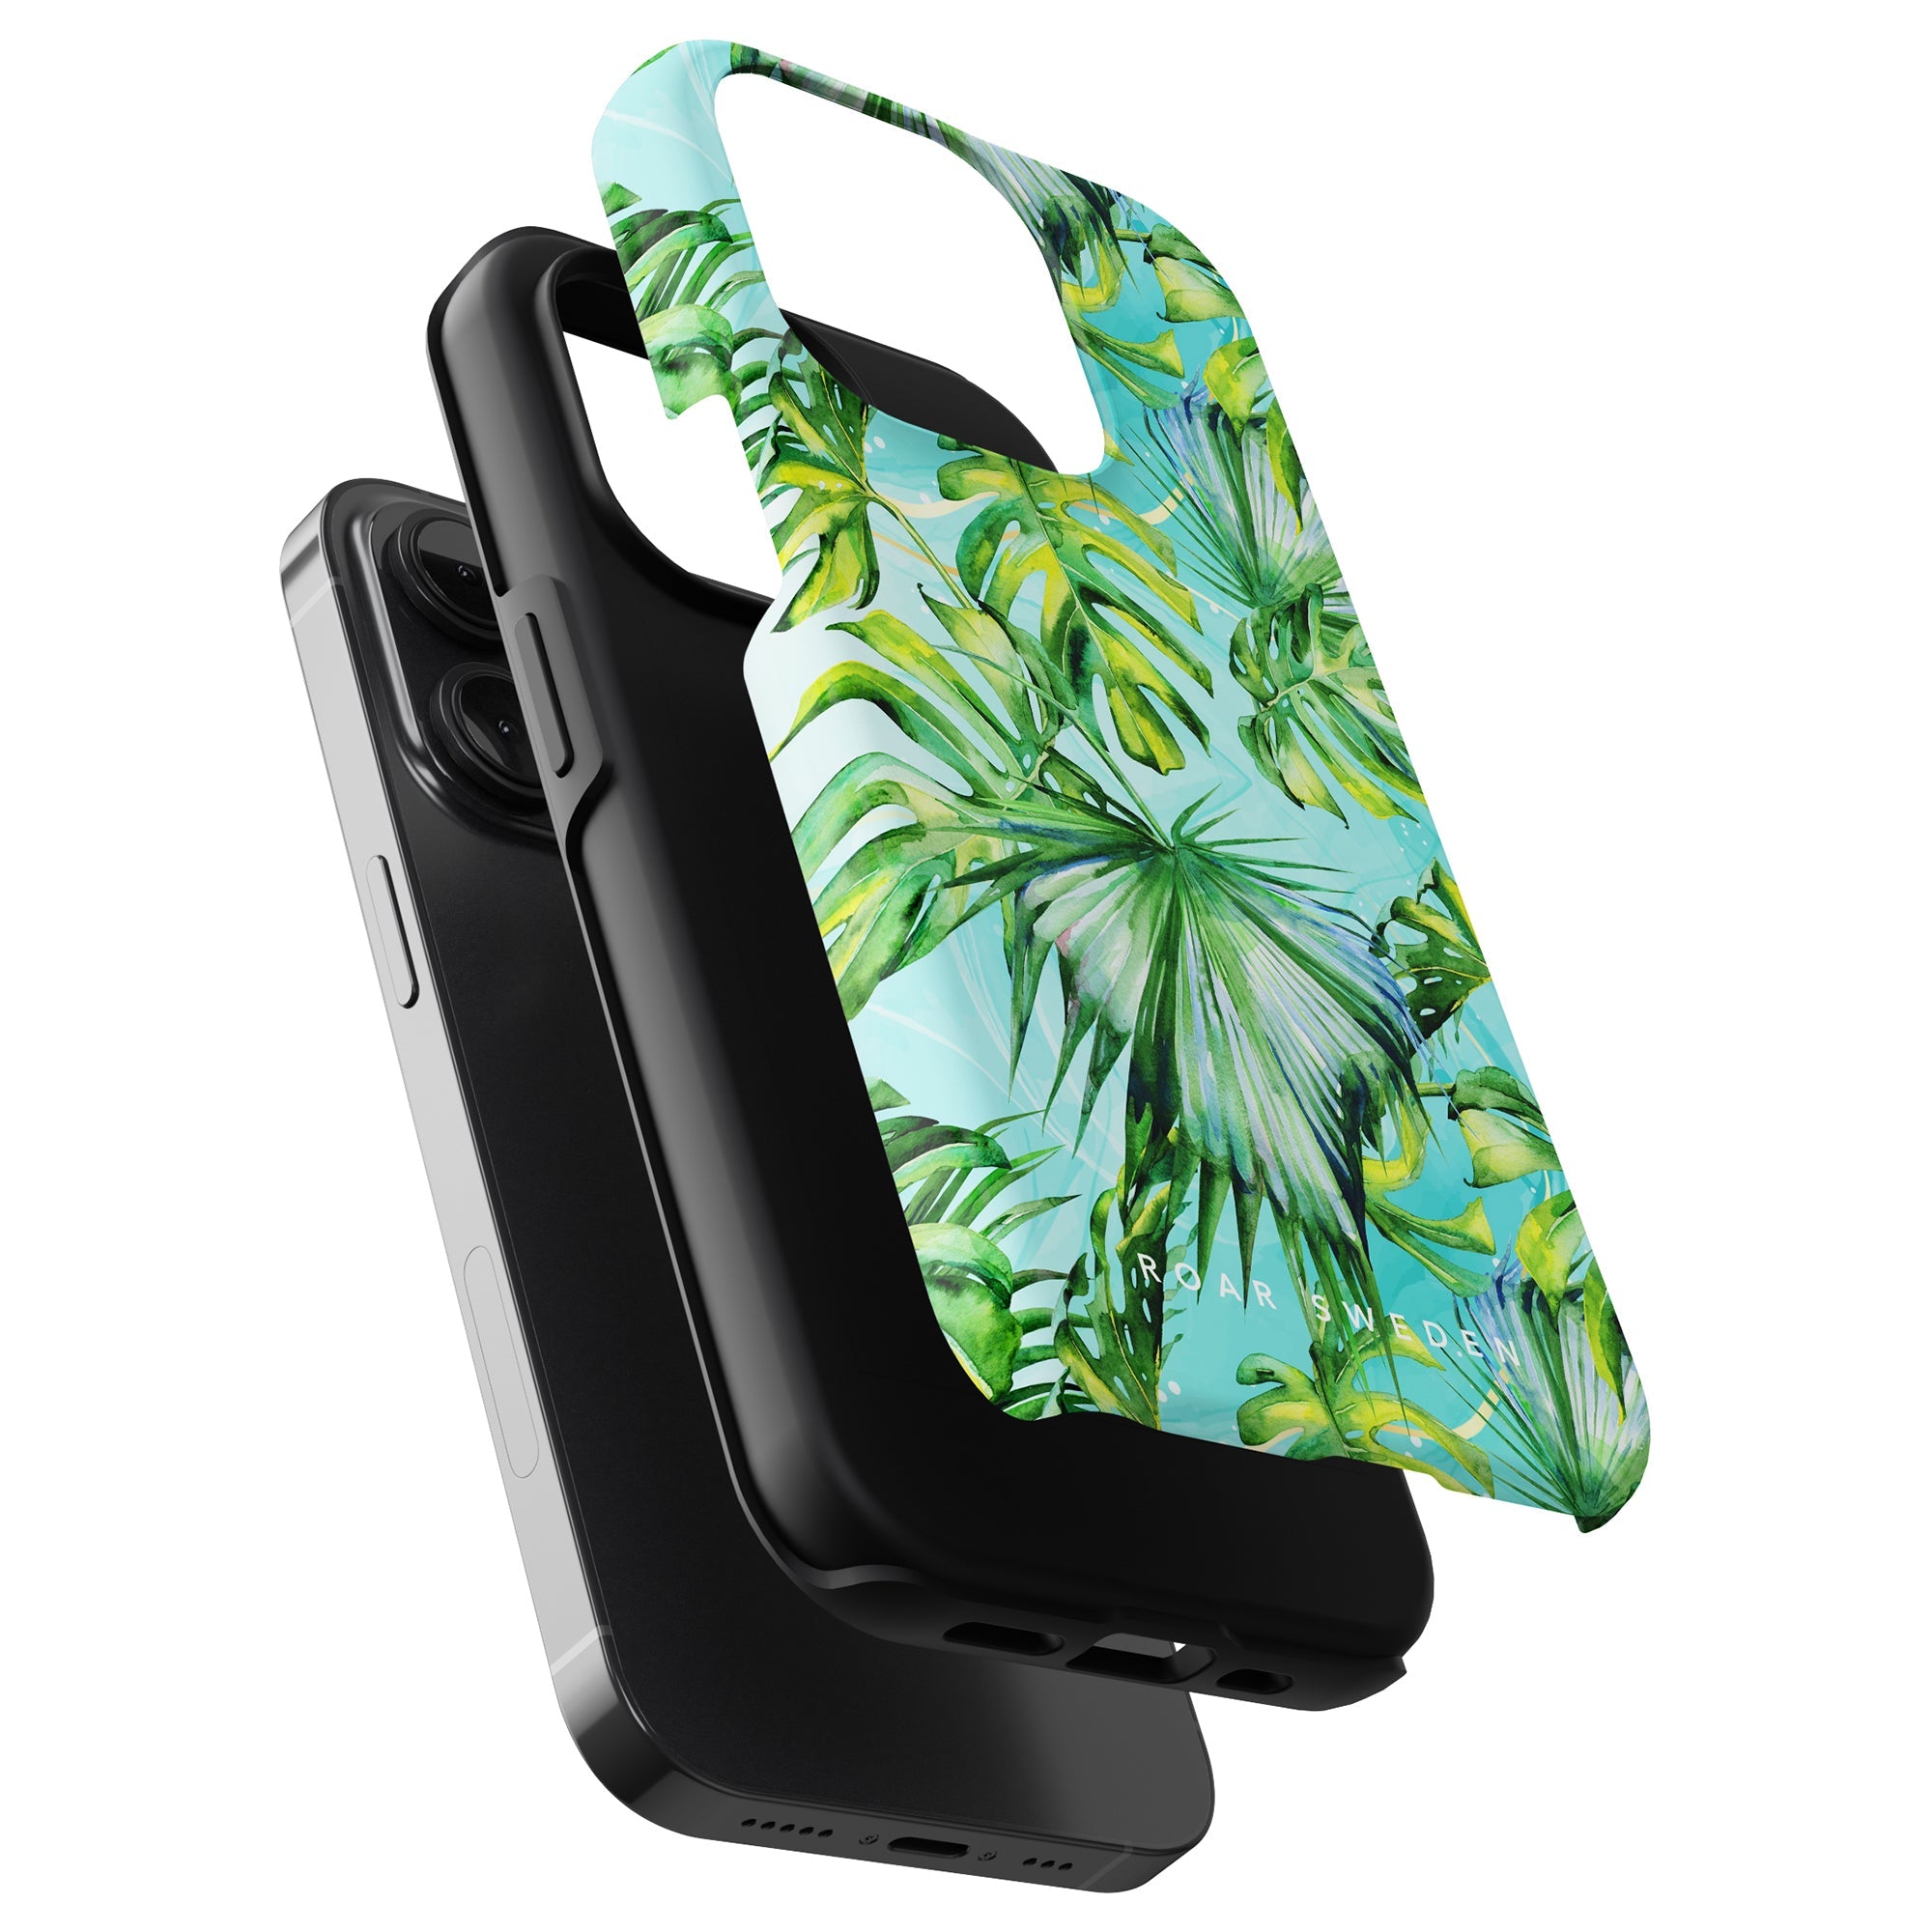 Ett karibiskt inspirerat smartphonefodral med blått och grönt tropiskt tryck för iPhone 11 som kallas "Caribbean - Tough case".